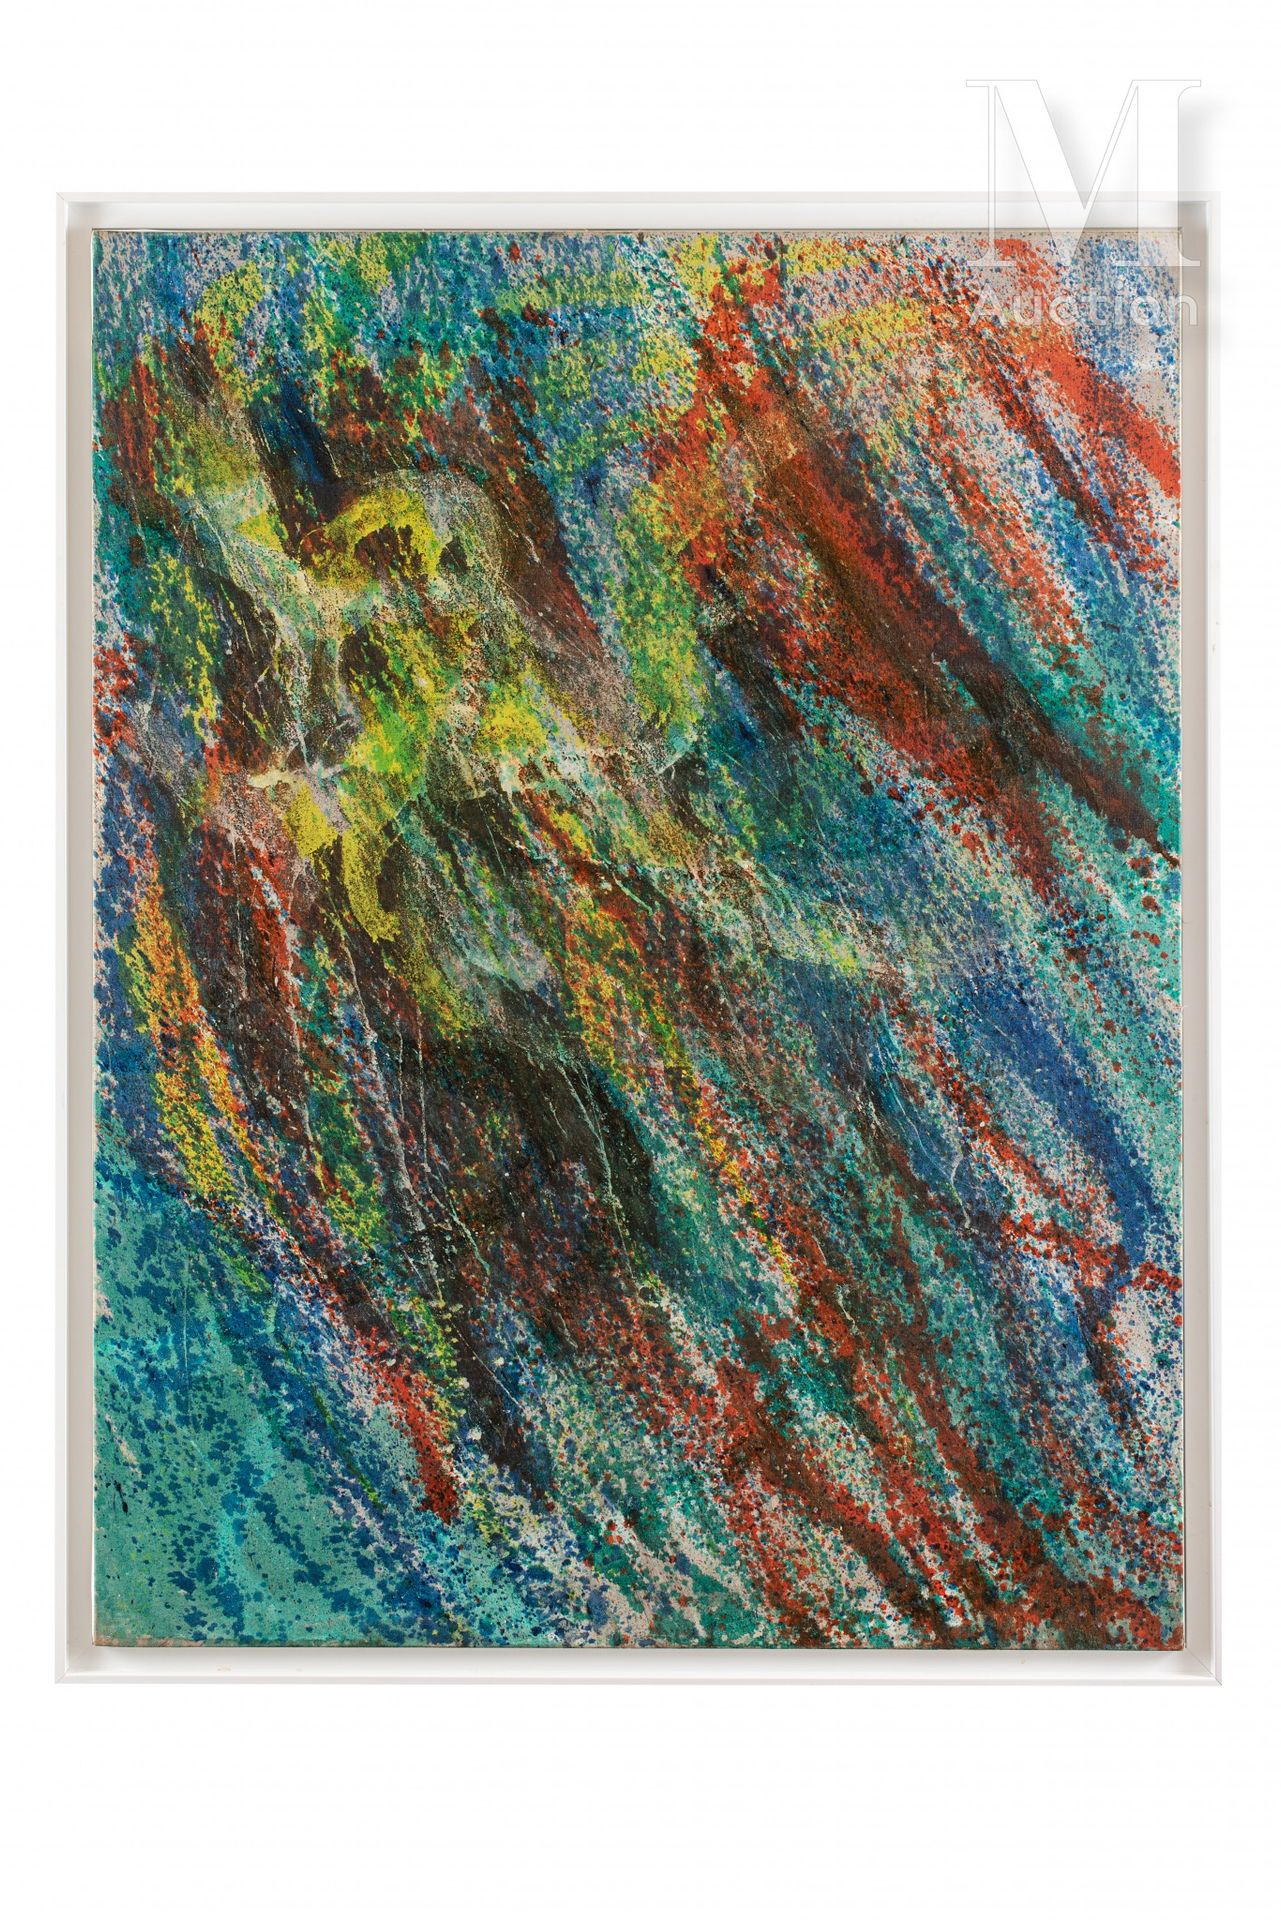 Stanley William HAYTER (1901-1988) Die Krake, 1963

Öl auf Leinwand

116 x 89 cm&hellip;